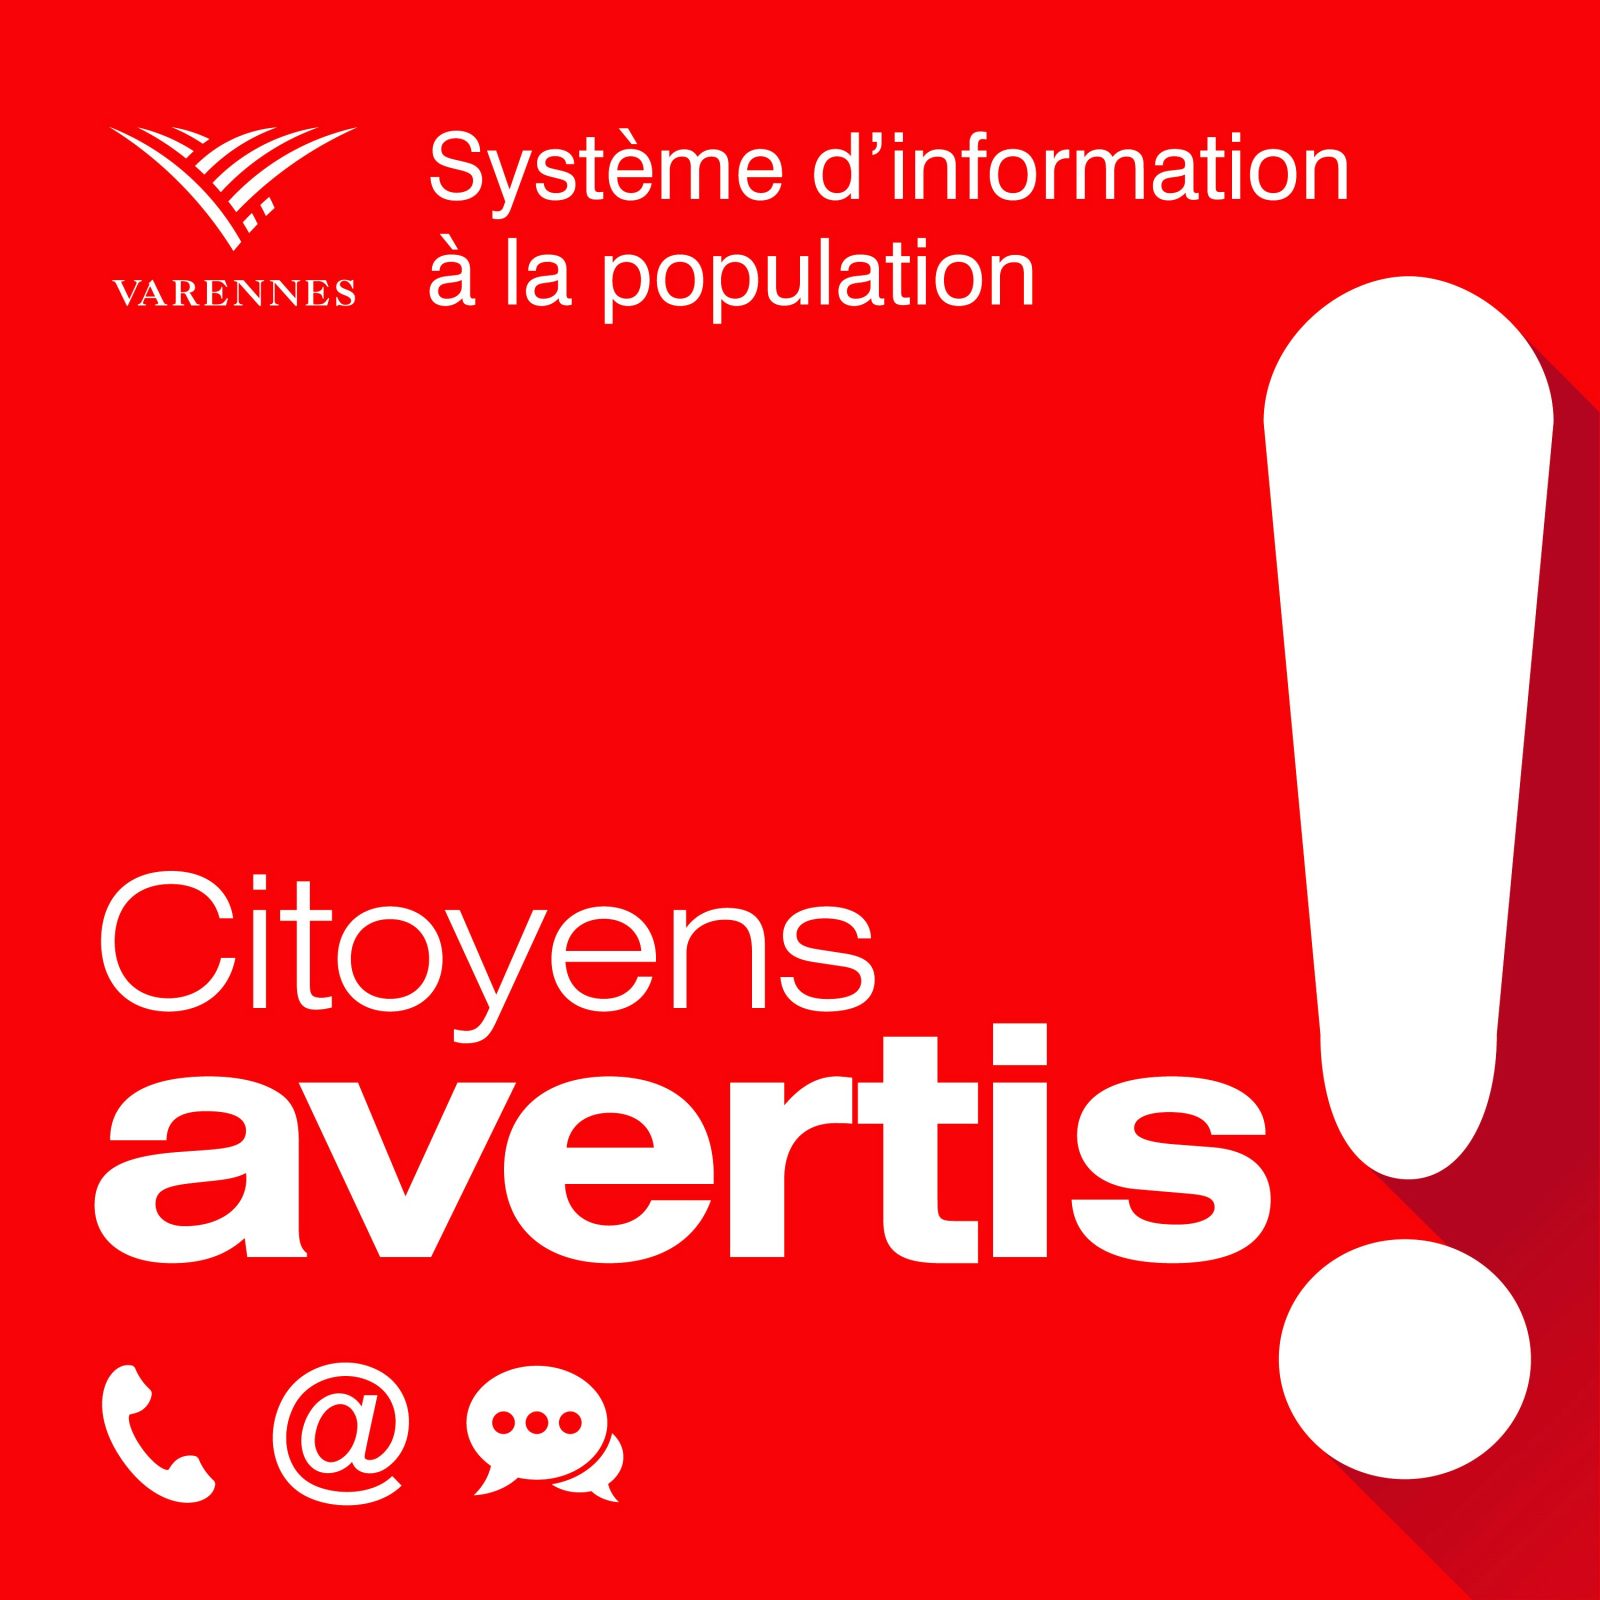 Les Varennois invités à s’inscrire ou à mettre à jour leurs données sur la plateforme de messages automatisés Citoyens Avertis!